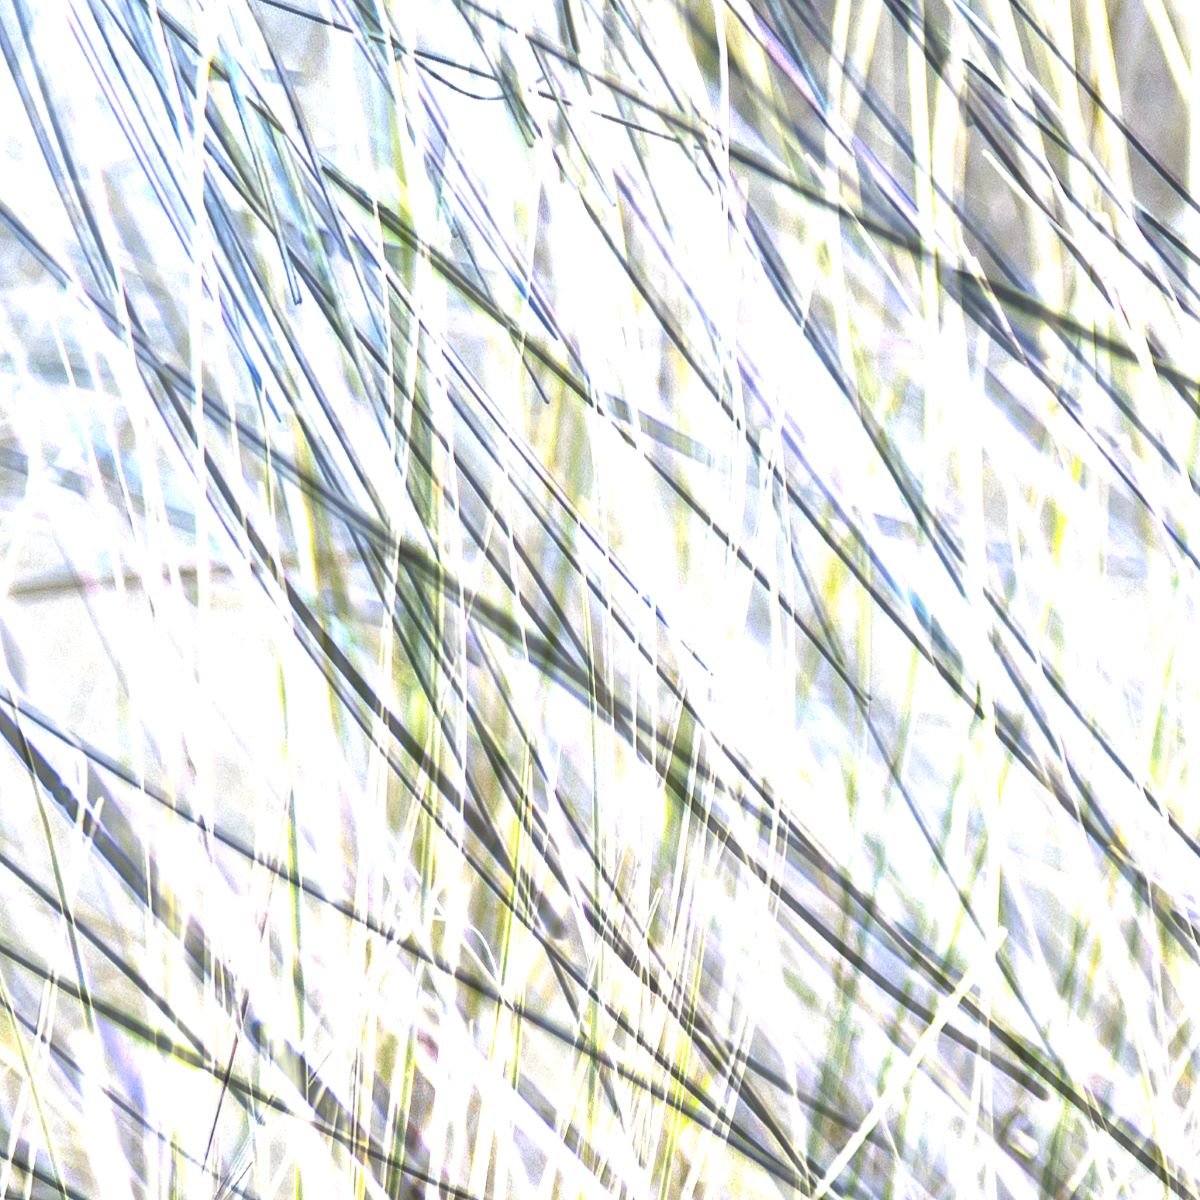 Grasses.jpg